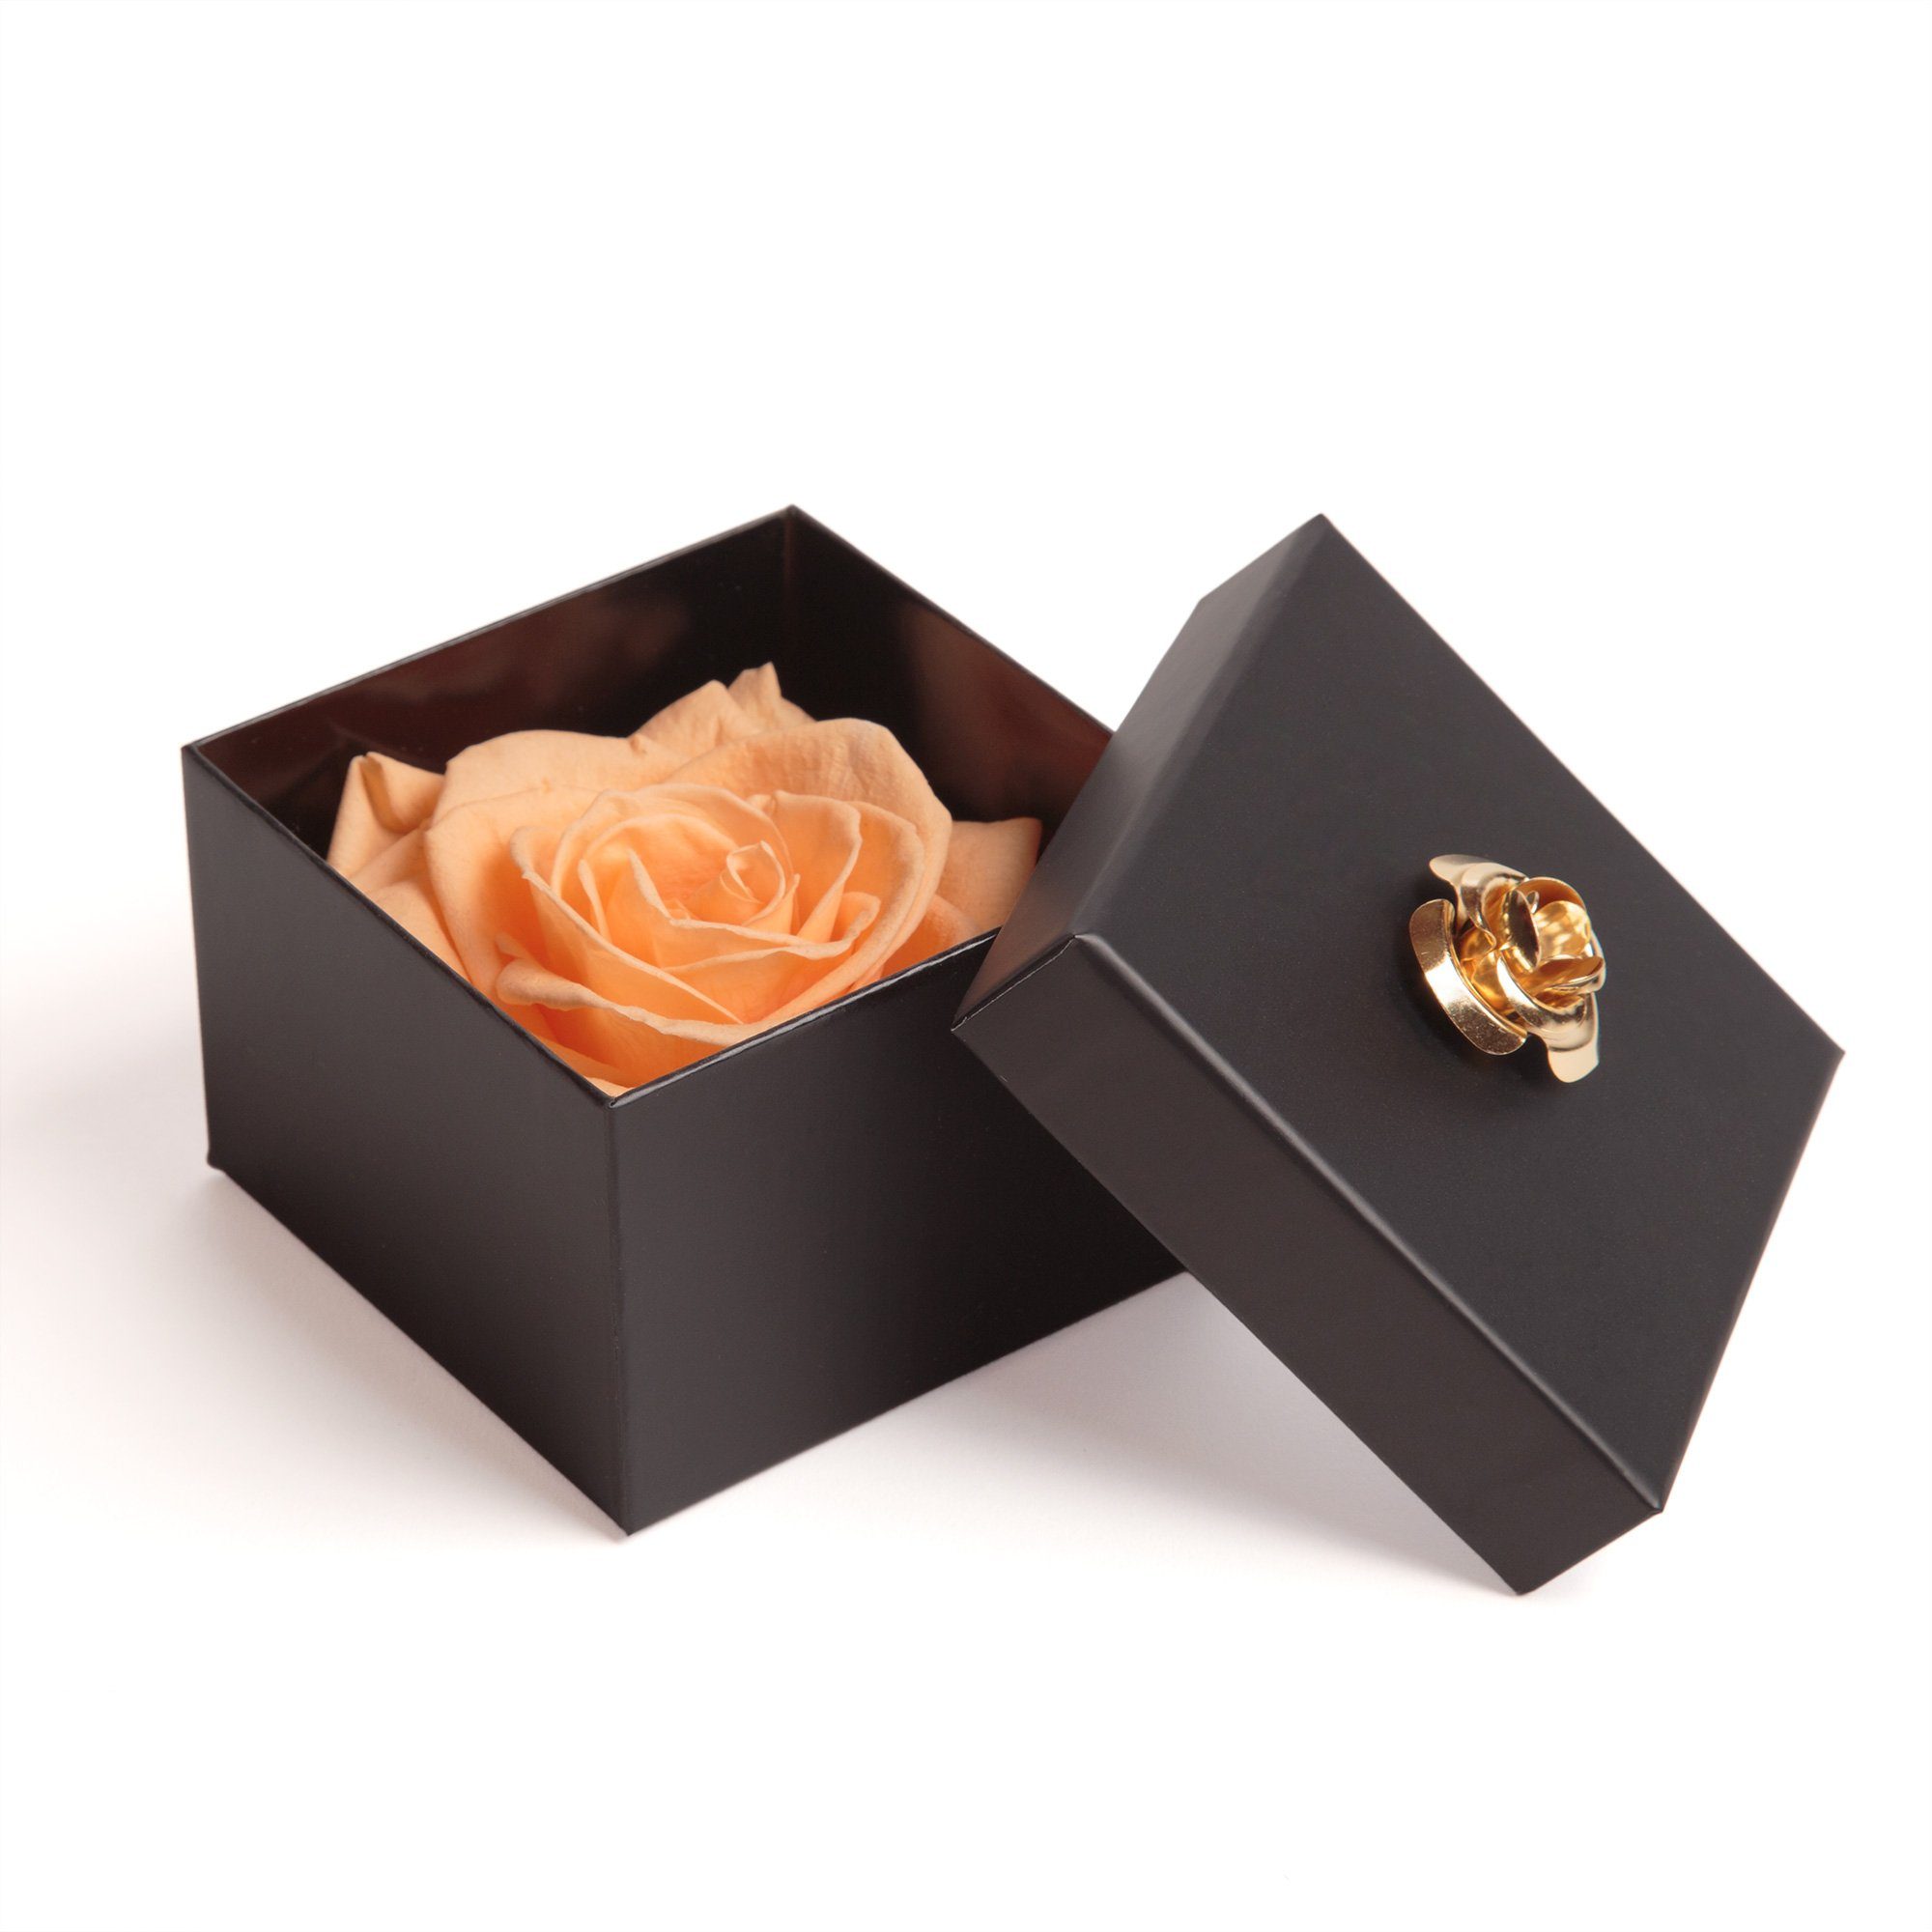 Box Blumendeckel 3 Kunstblume ROSEMARIE haltbar Rose 6.5 Jahre mit SCHULZ bis Infinity 1 Jahre Echte cm, Rose, haltbar zu in Rose 3 Heidelberg, peach Rose Höhe